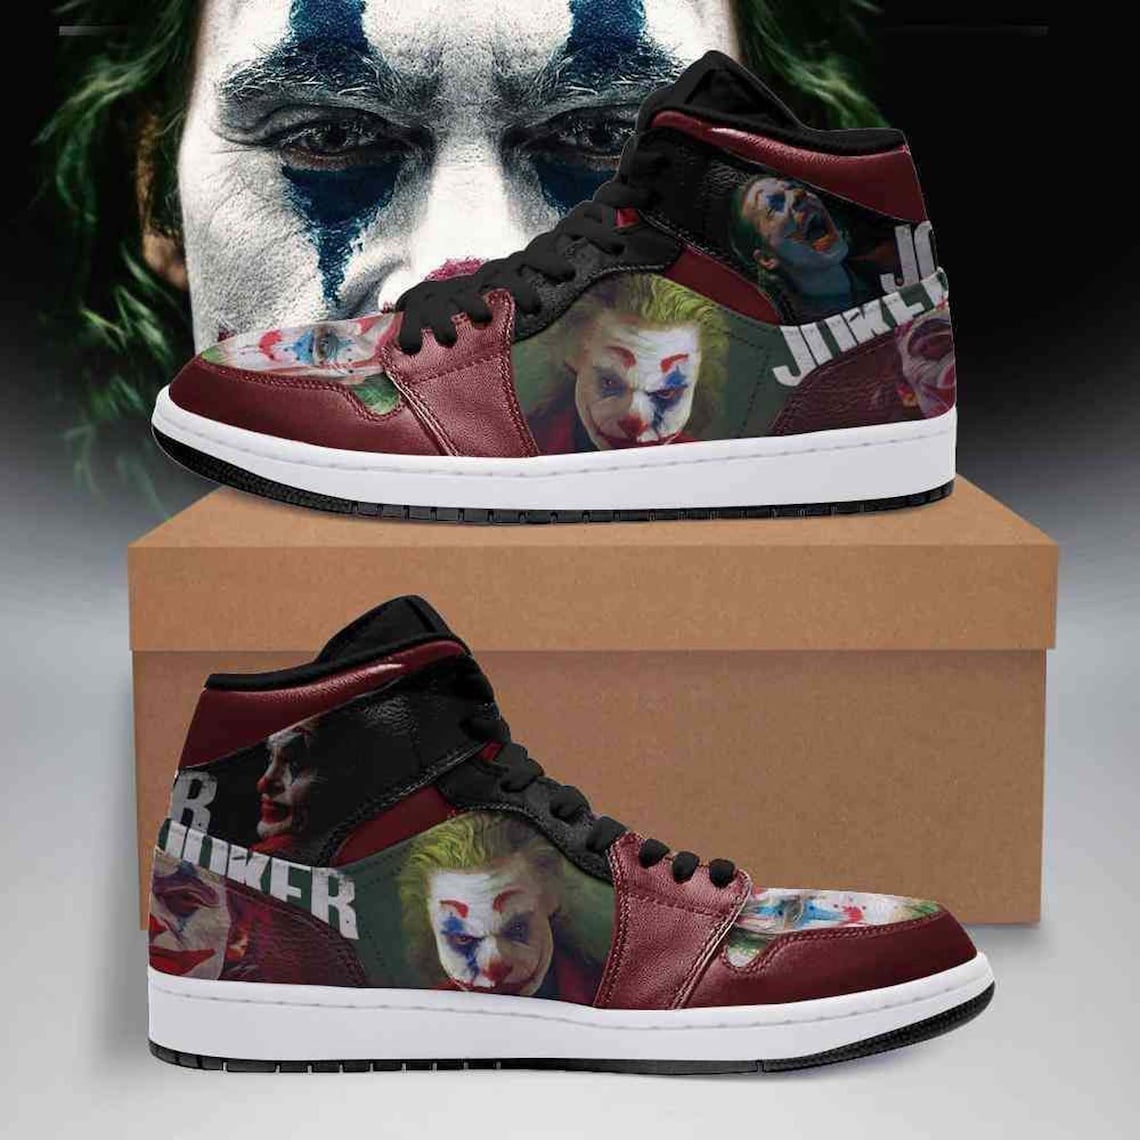 High quality Joker Sneakers Joker Jordan 1 Shoes | Etsy